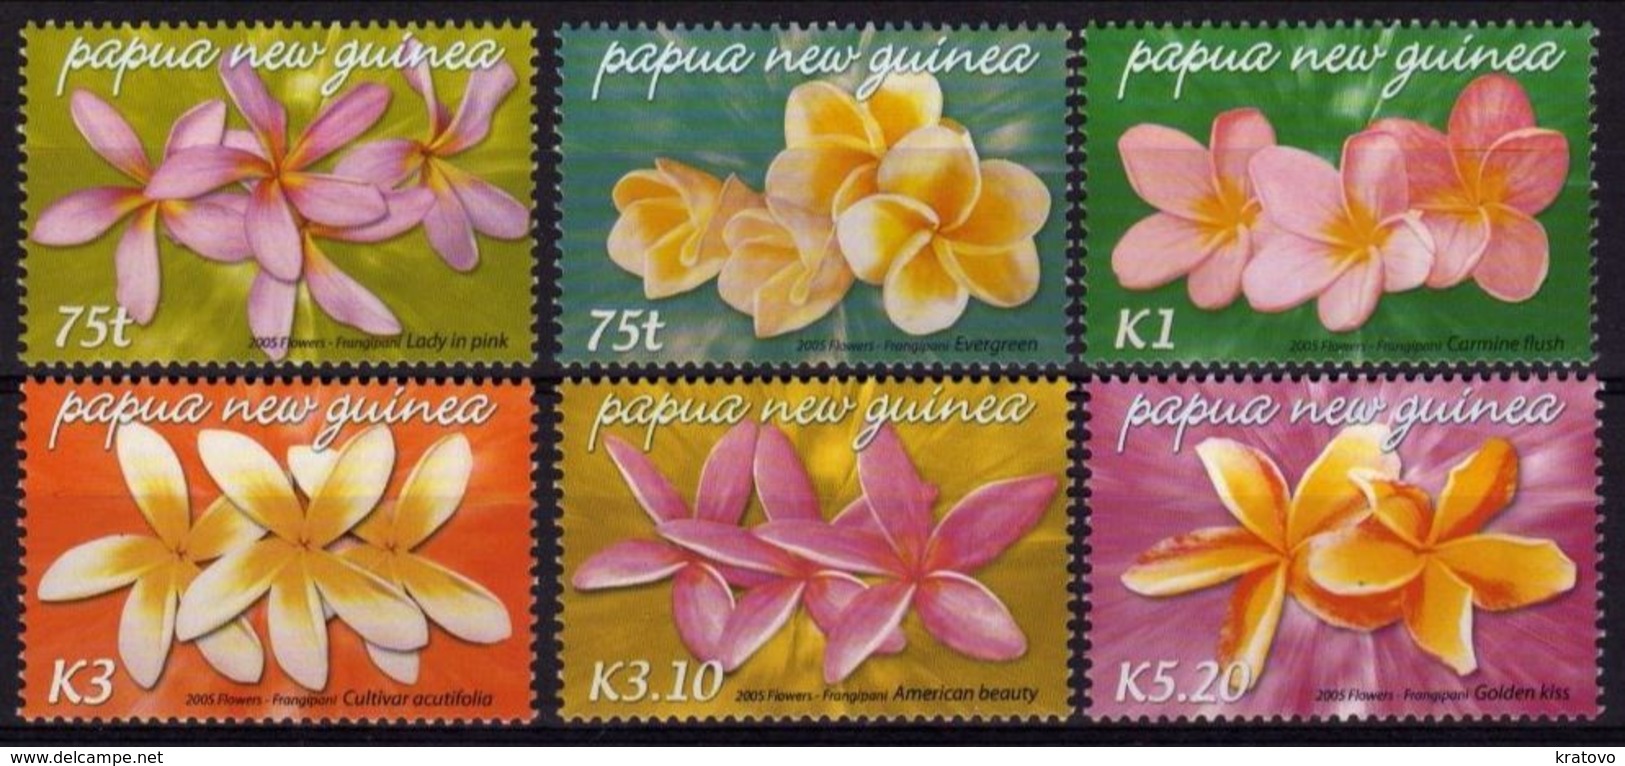 PAPUA NEW GUINEA 2005 Mi # 1123 - 1128 FLORA FLOWERS MNH - Papouasie-Nouvelle-Guinée